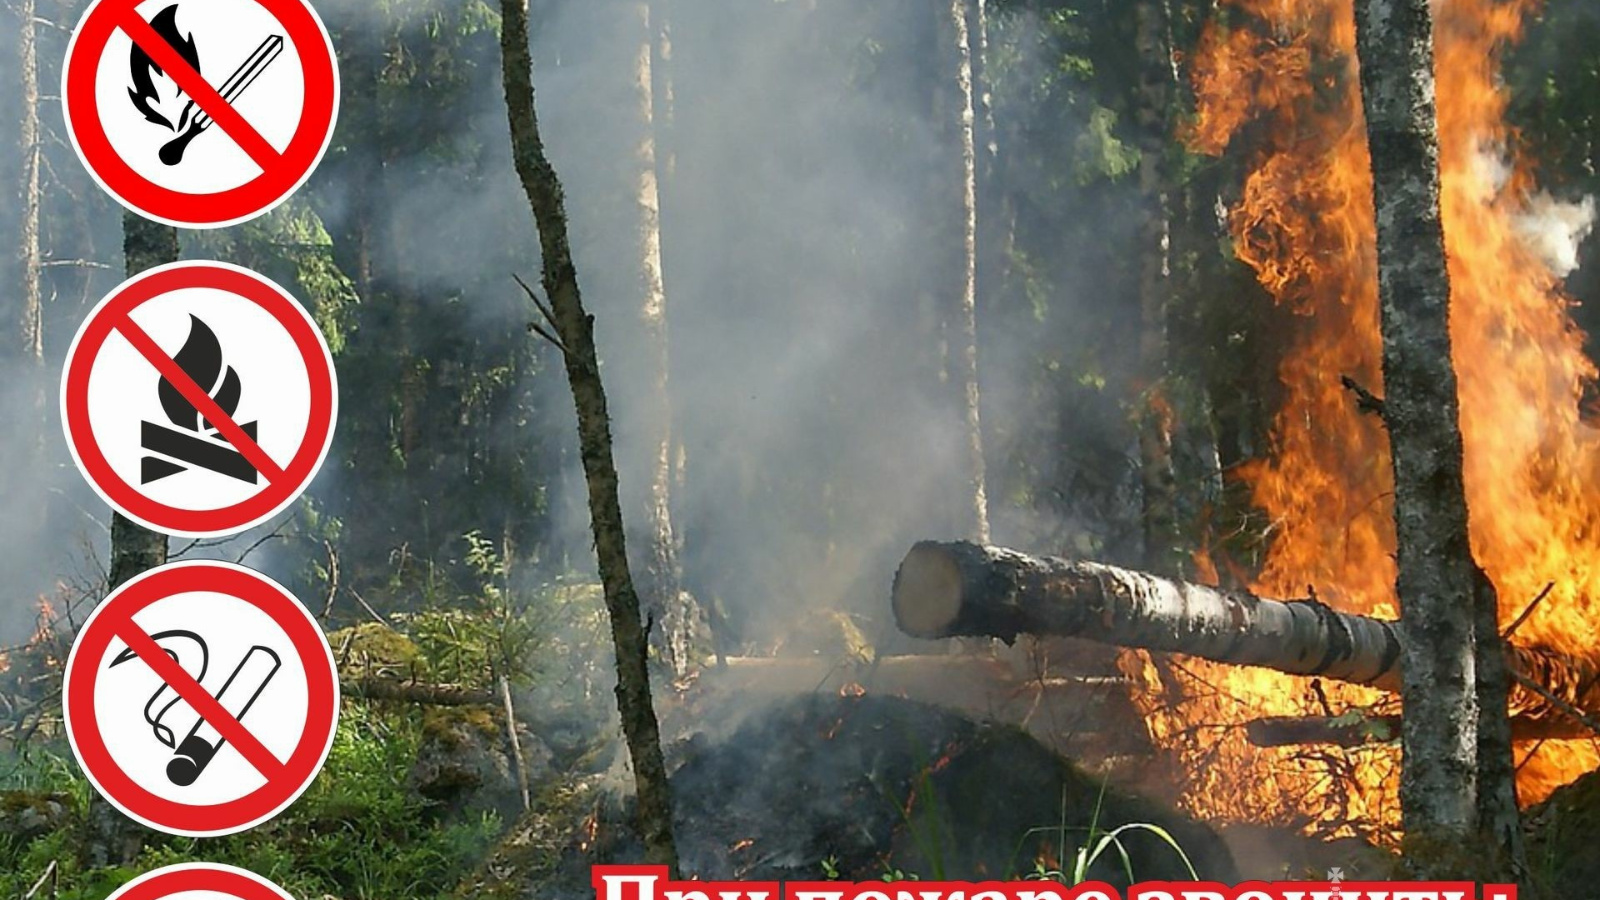 Этом сохраняется на высоком. Пожарная безопасность в лесу. Противопожарные аншлаги в лесу. Опасность лесных пожаров. Нарушение правил пожарной безопасности в лесах.